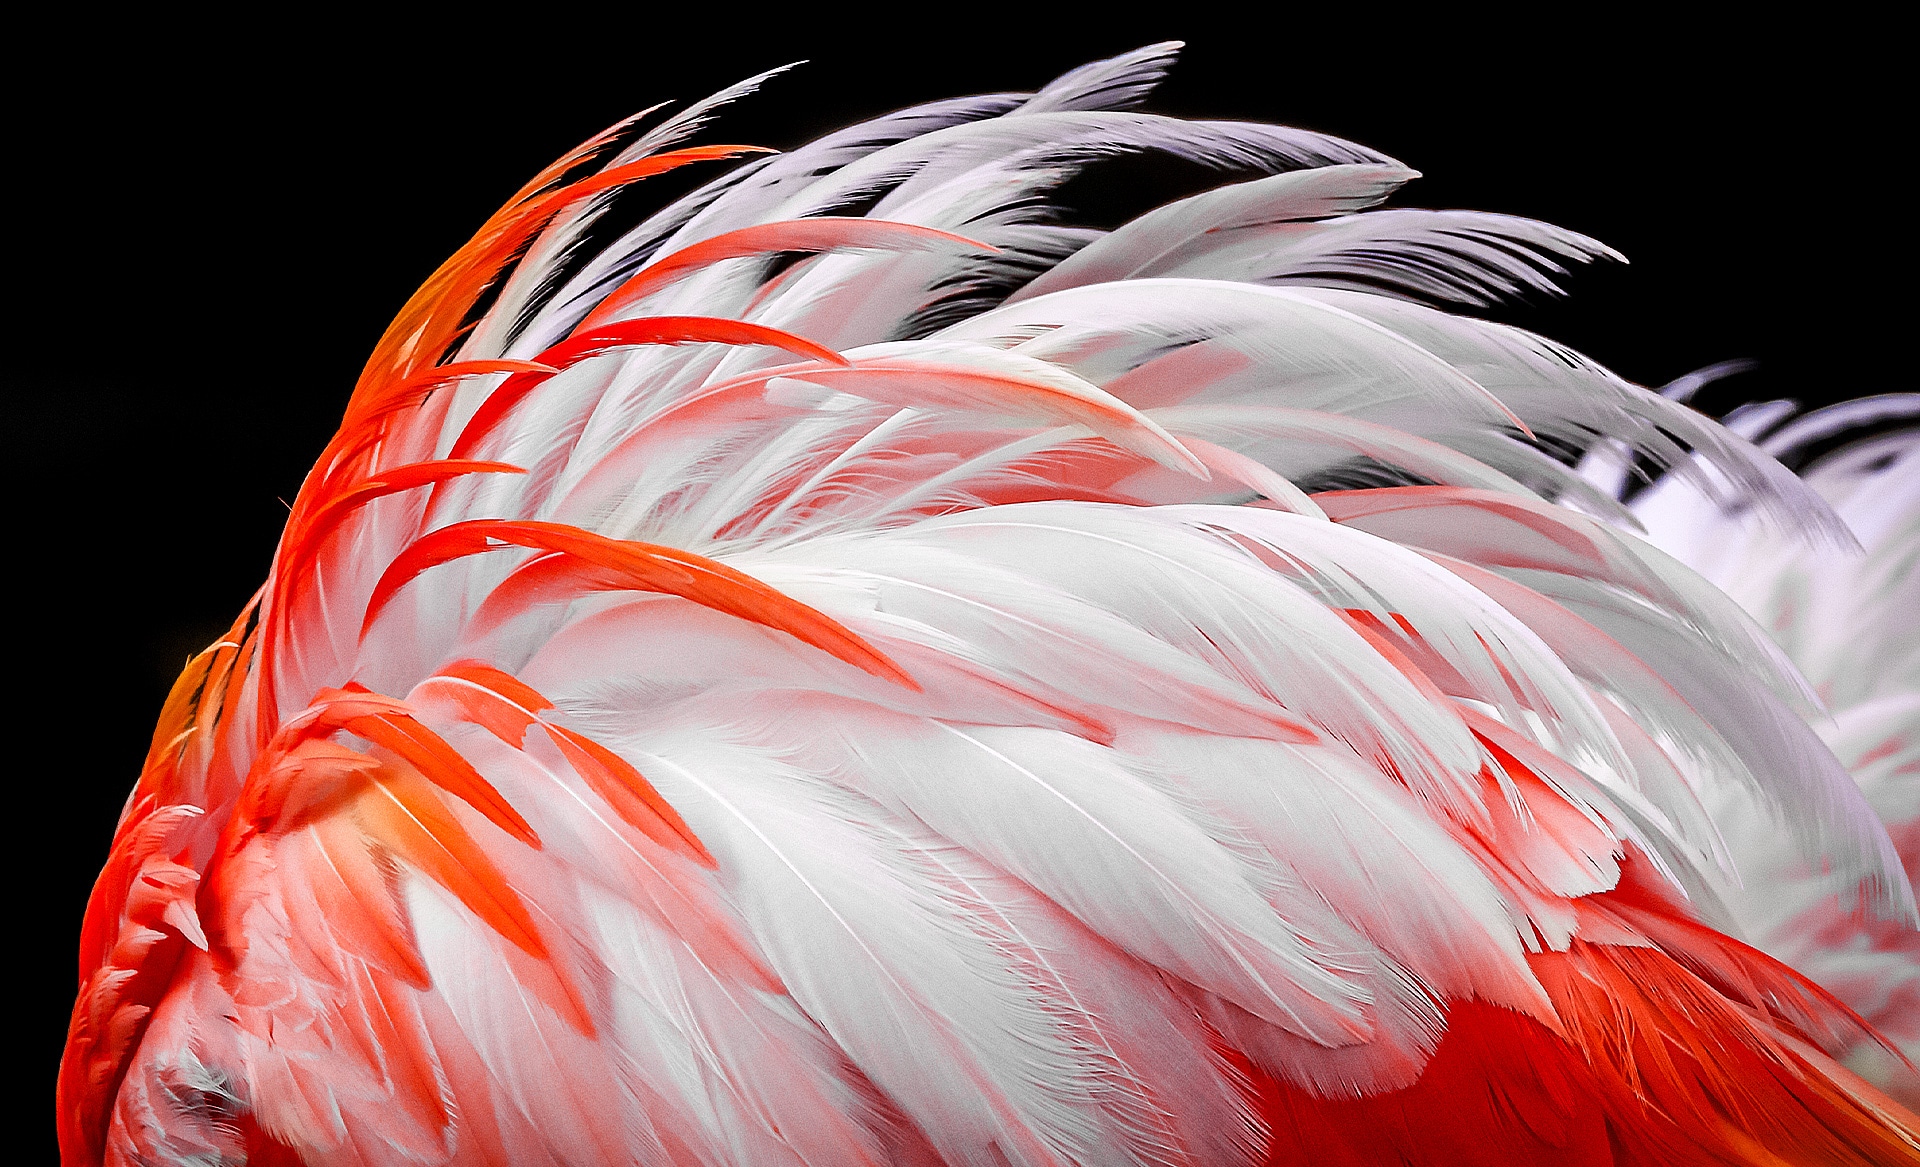 Ekrane parodomas blausus baltos ir oranžinės spalvų flamingo plunksnų vaizdas. Ilgainiui jis šviesinamas iki 8 %, 13 %, 20 %, 23 %, 26 % ir galiausiai iki 30 %.
